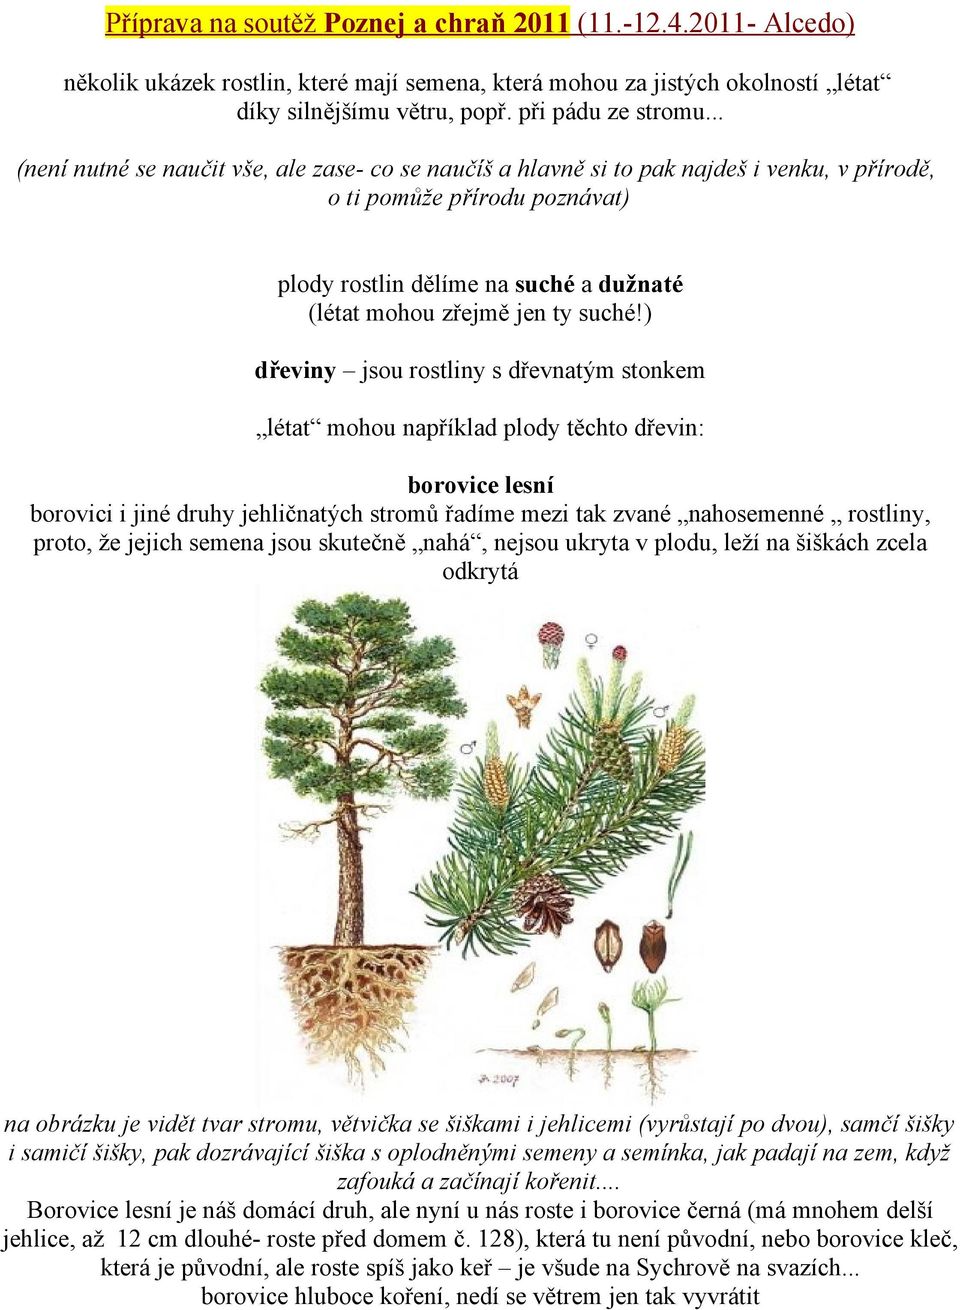 ) dřeviny jsou rostliny s dřevnatým stonkem létat mohou například plody těchto dřevin: borovice lesní borovici i jiné druhy jehličnatých stromů řadíme mezi tak zvané nahosemenné rostliny, proto, že